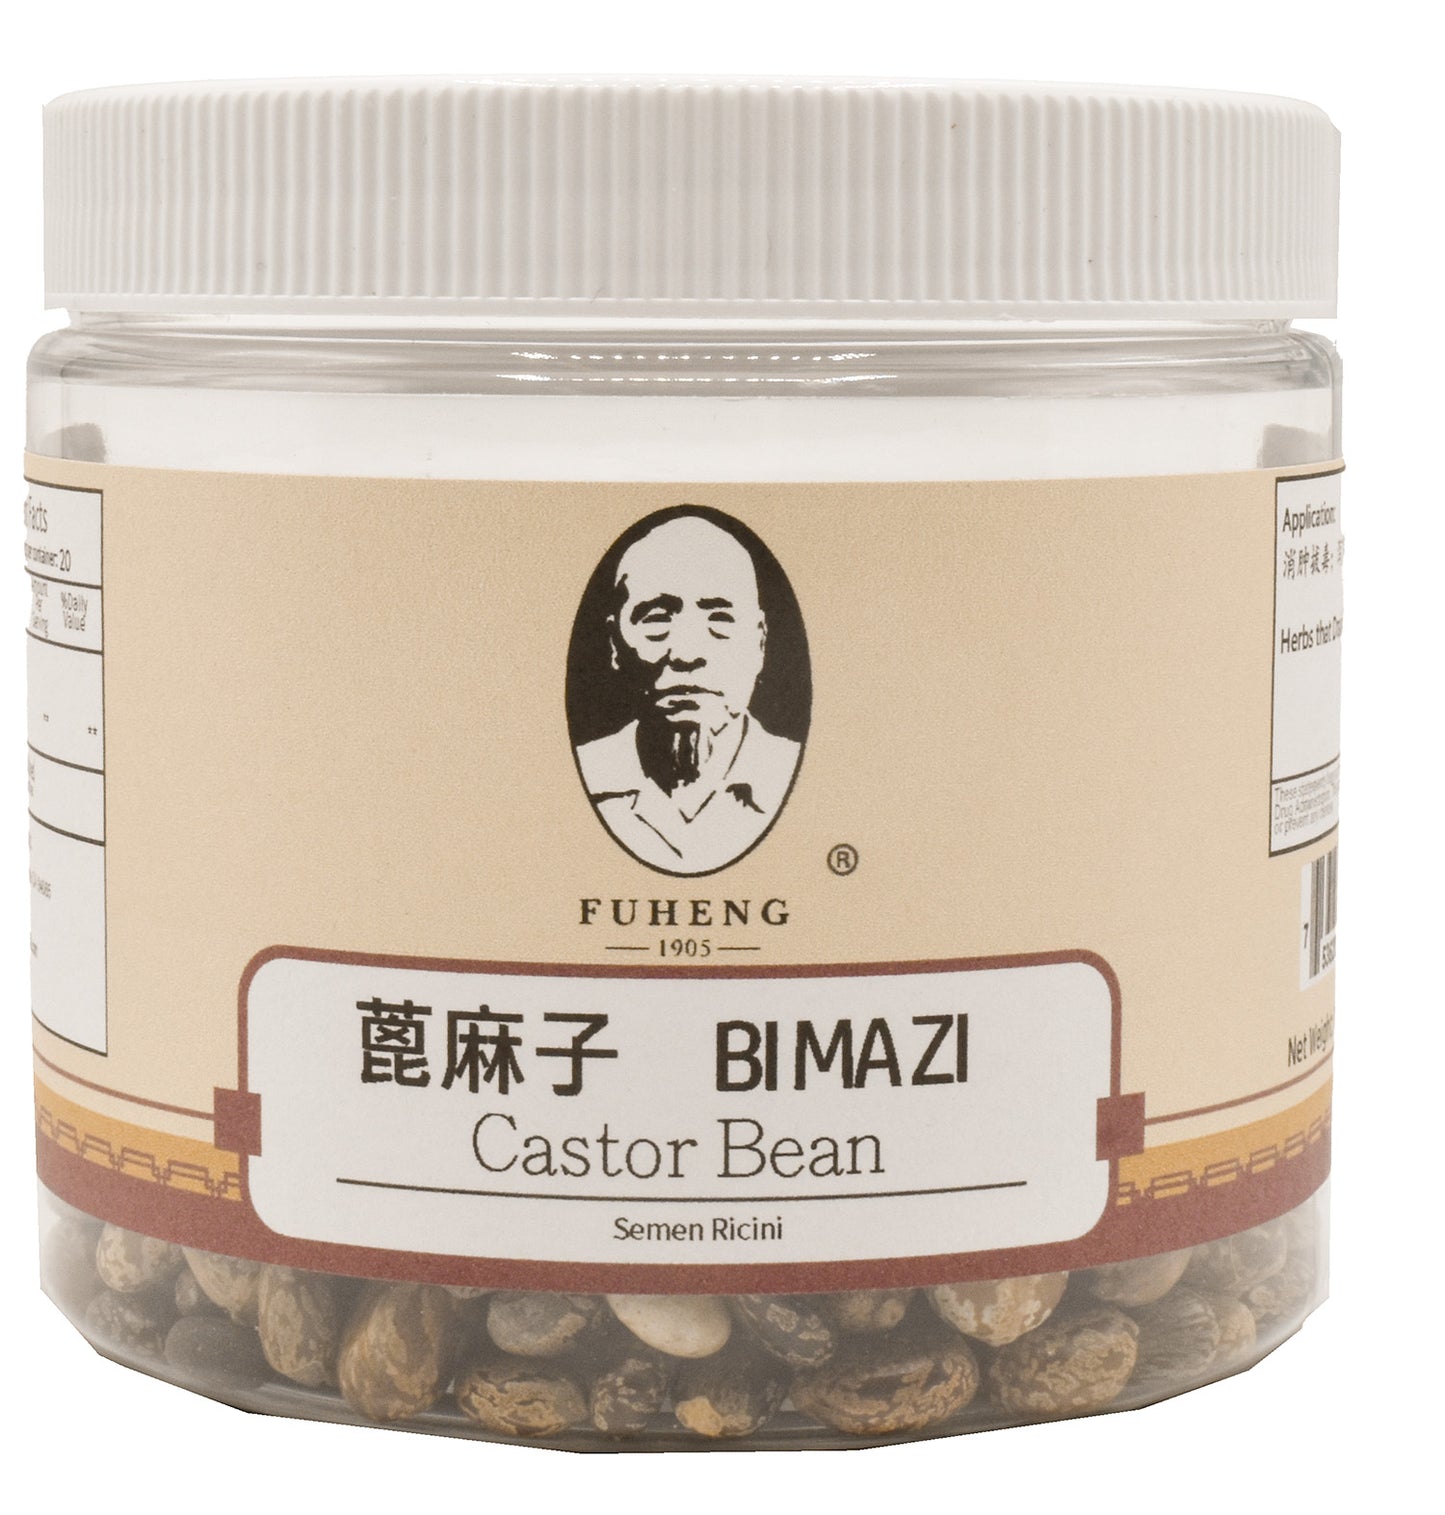 BI MA ZI - 蓖麻子 - Castor Bean - 100g